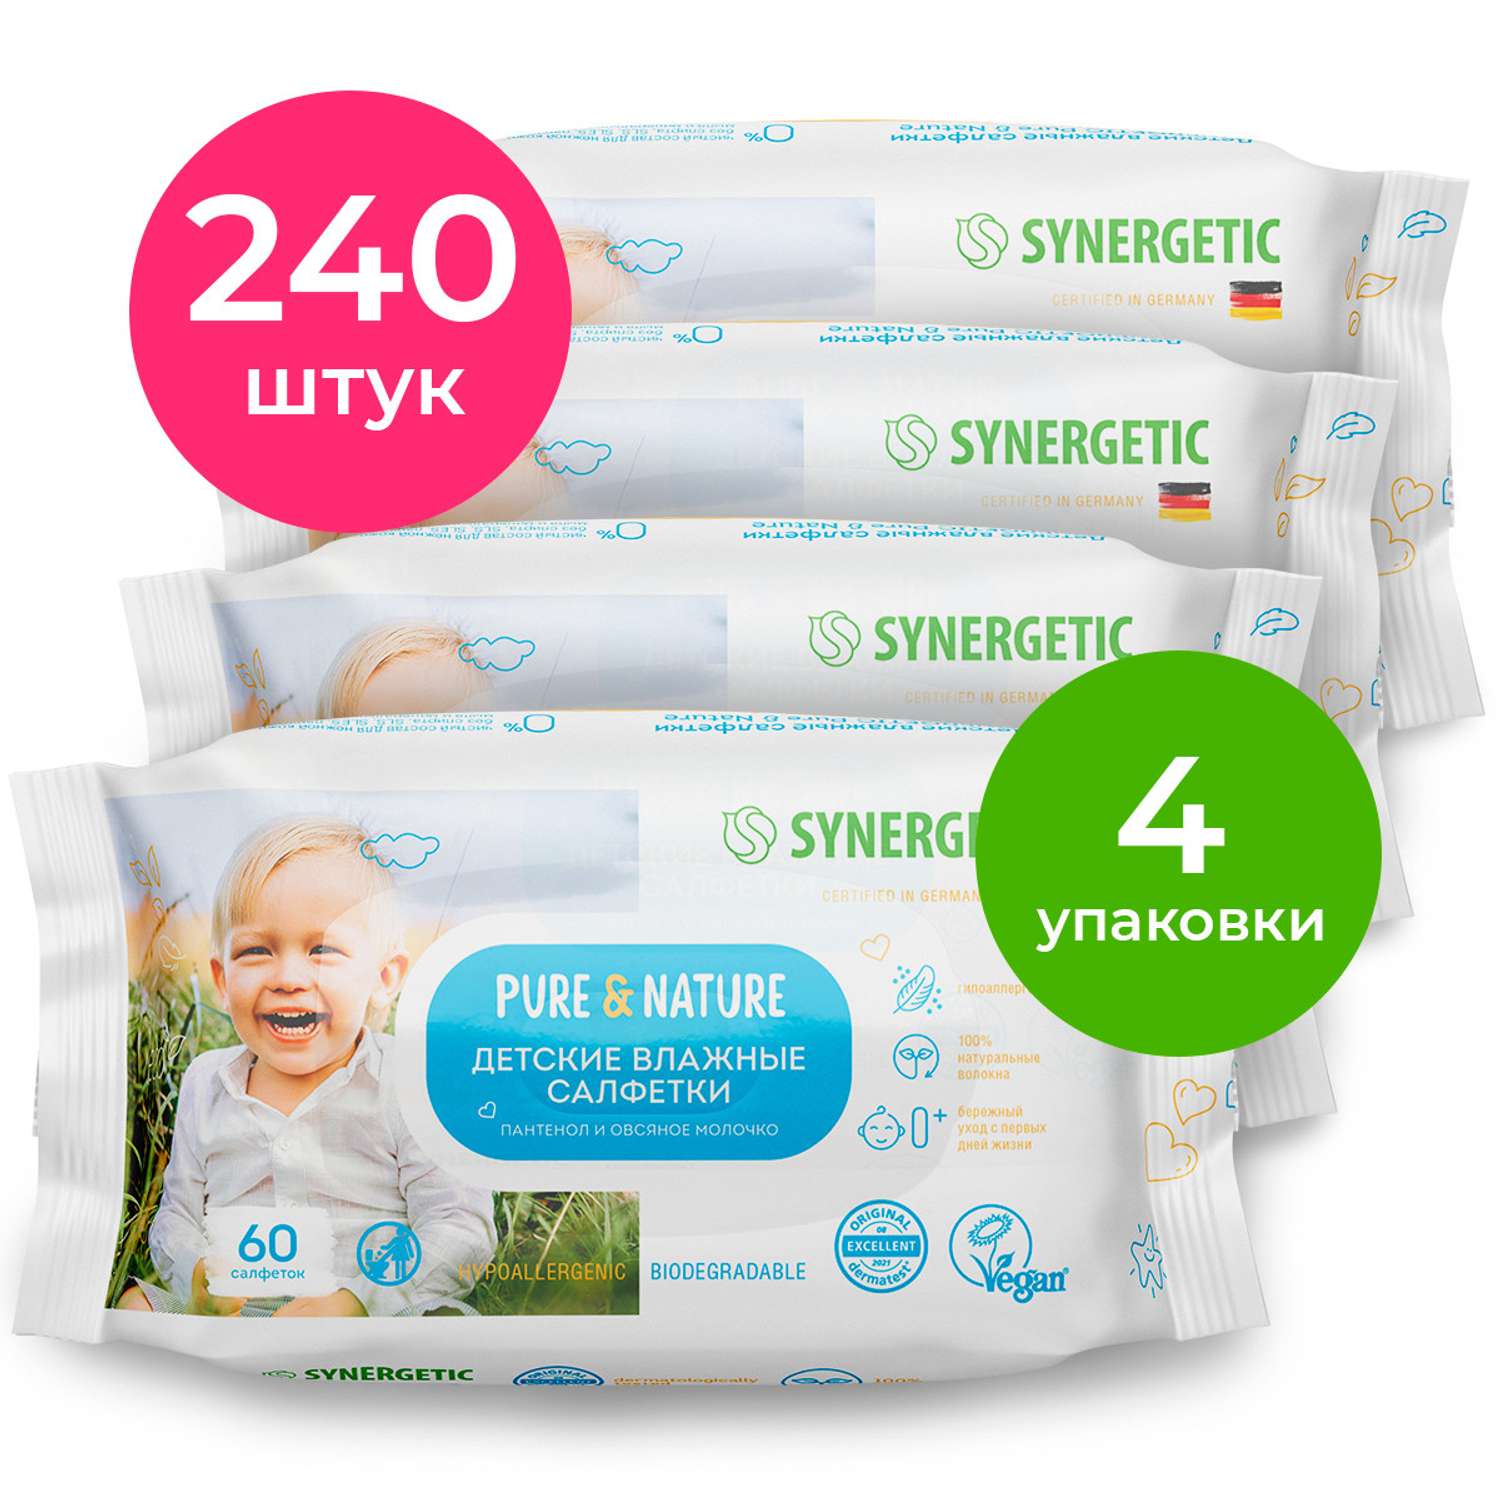 Салфетки влажные для детей SYNERGETIC Pure Nature пантенол и овсяное молочко 4 упаковки по 60 шт - фото 1